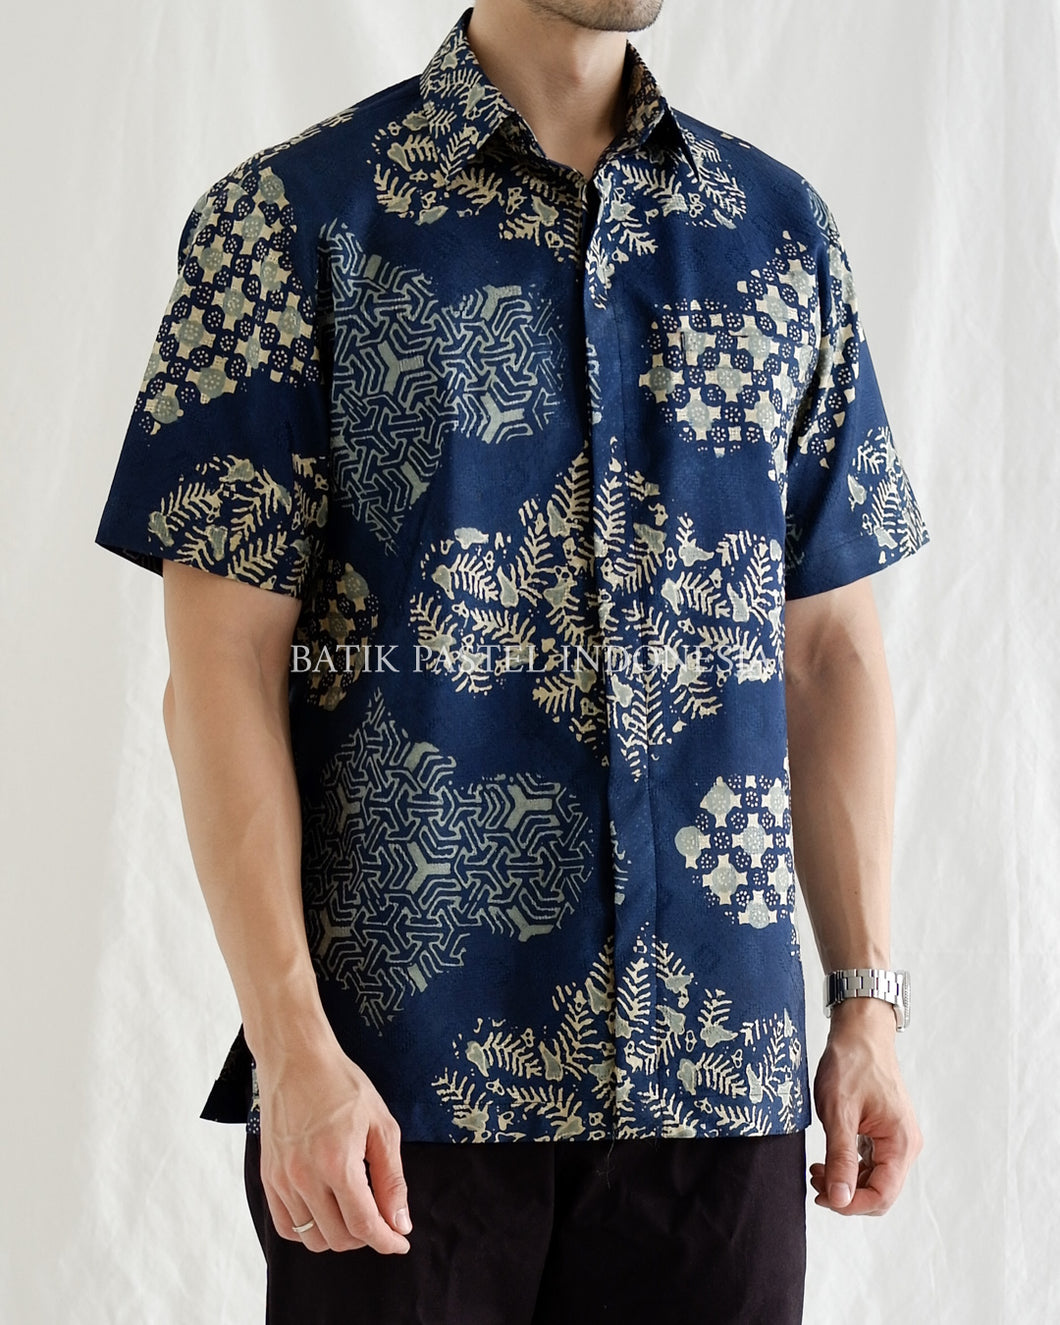 PO Batik Shirt - Pulau Clove Navy